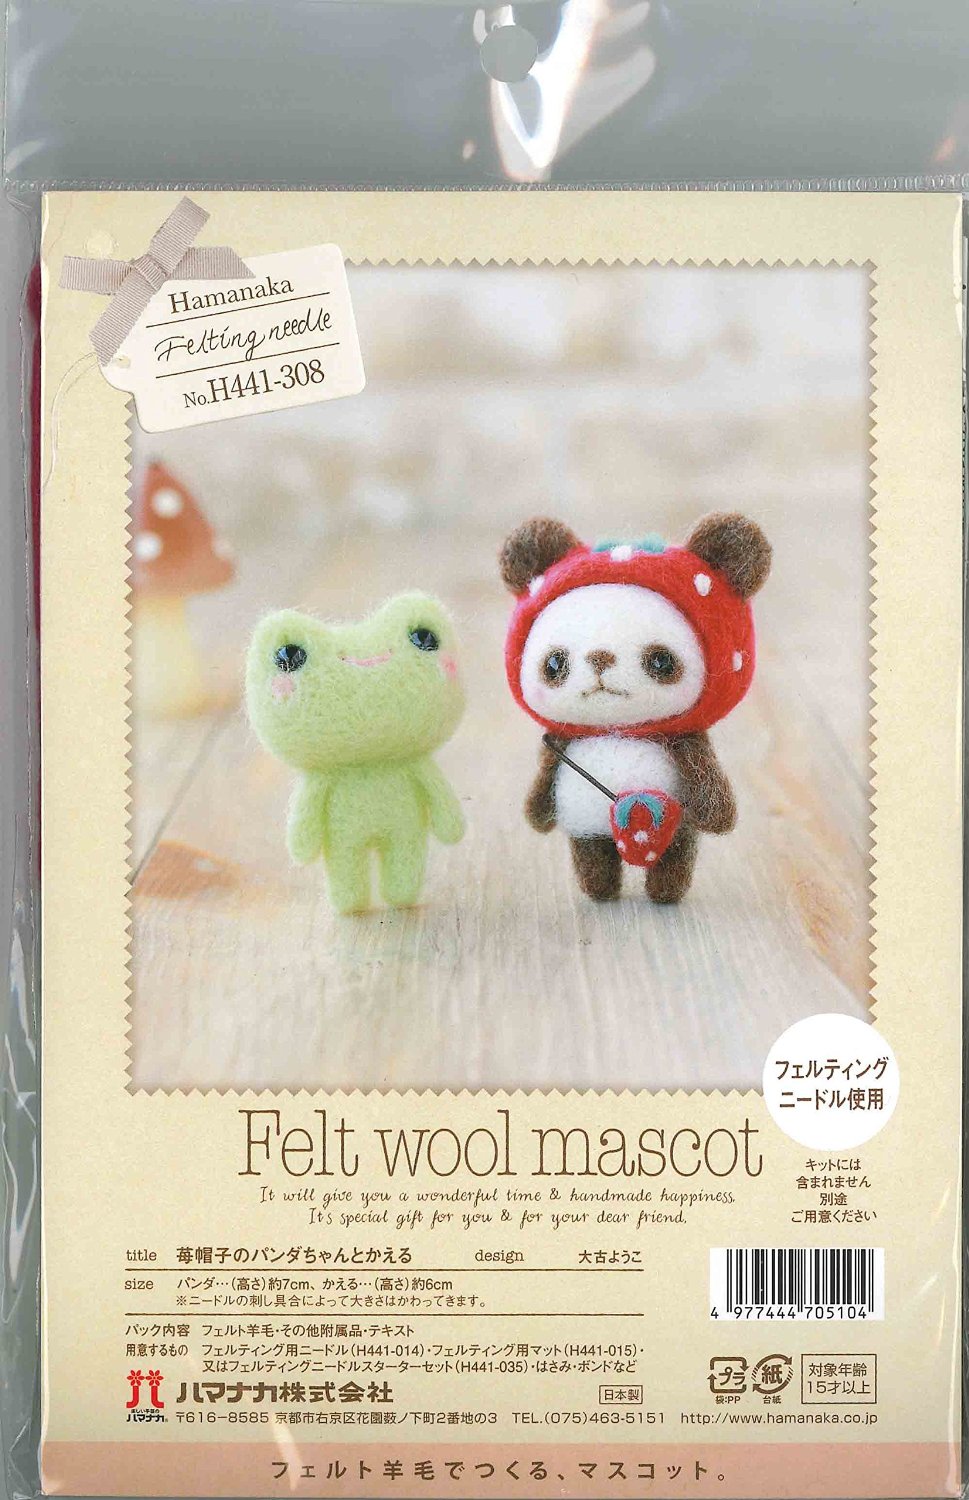 Needle Felted Panda Gift - Needle Felting Kits